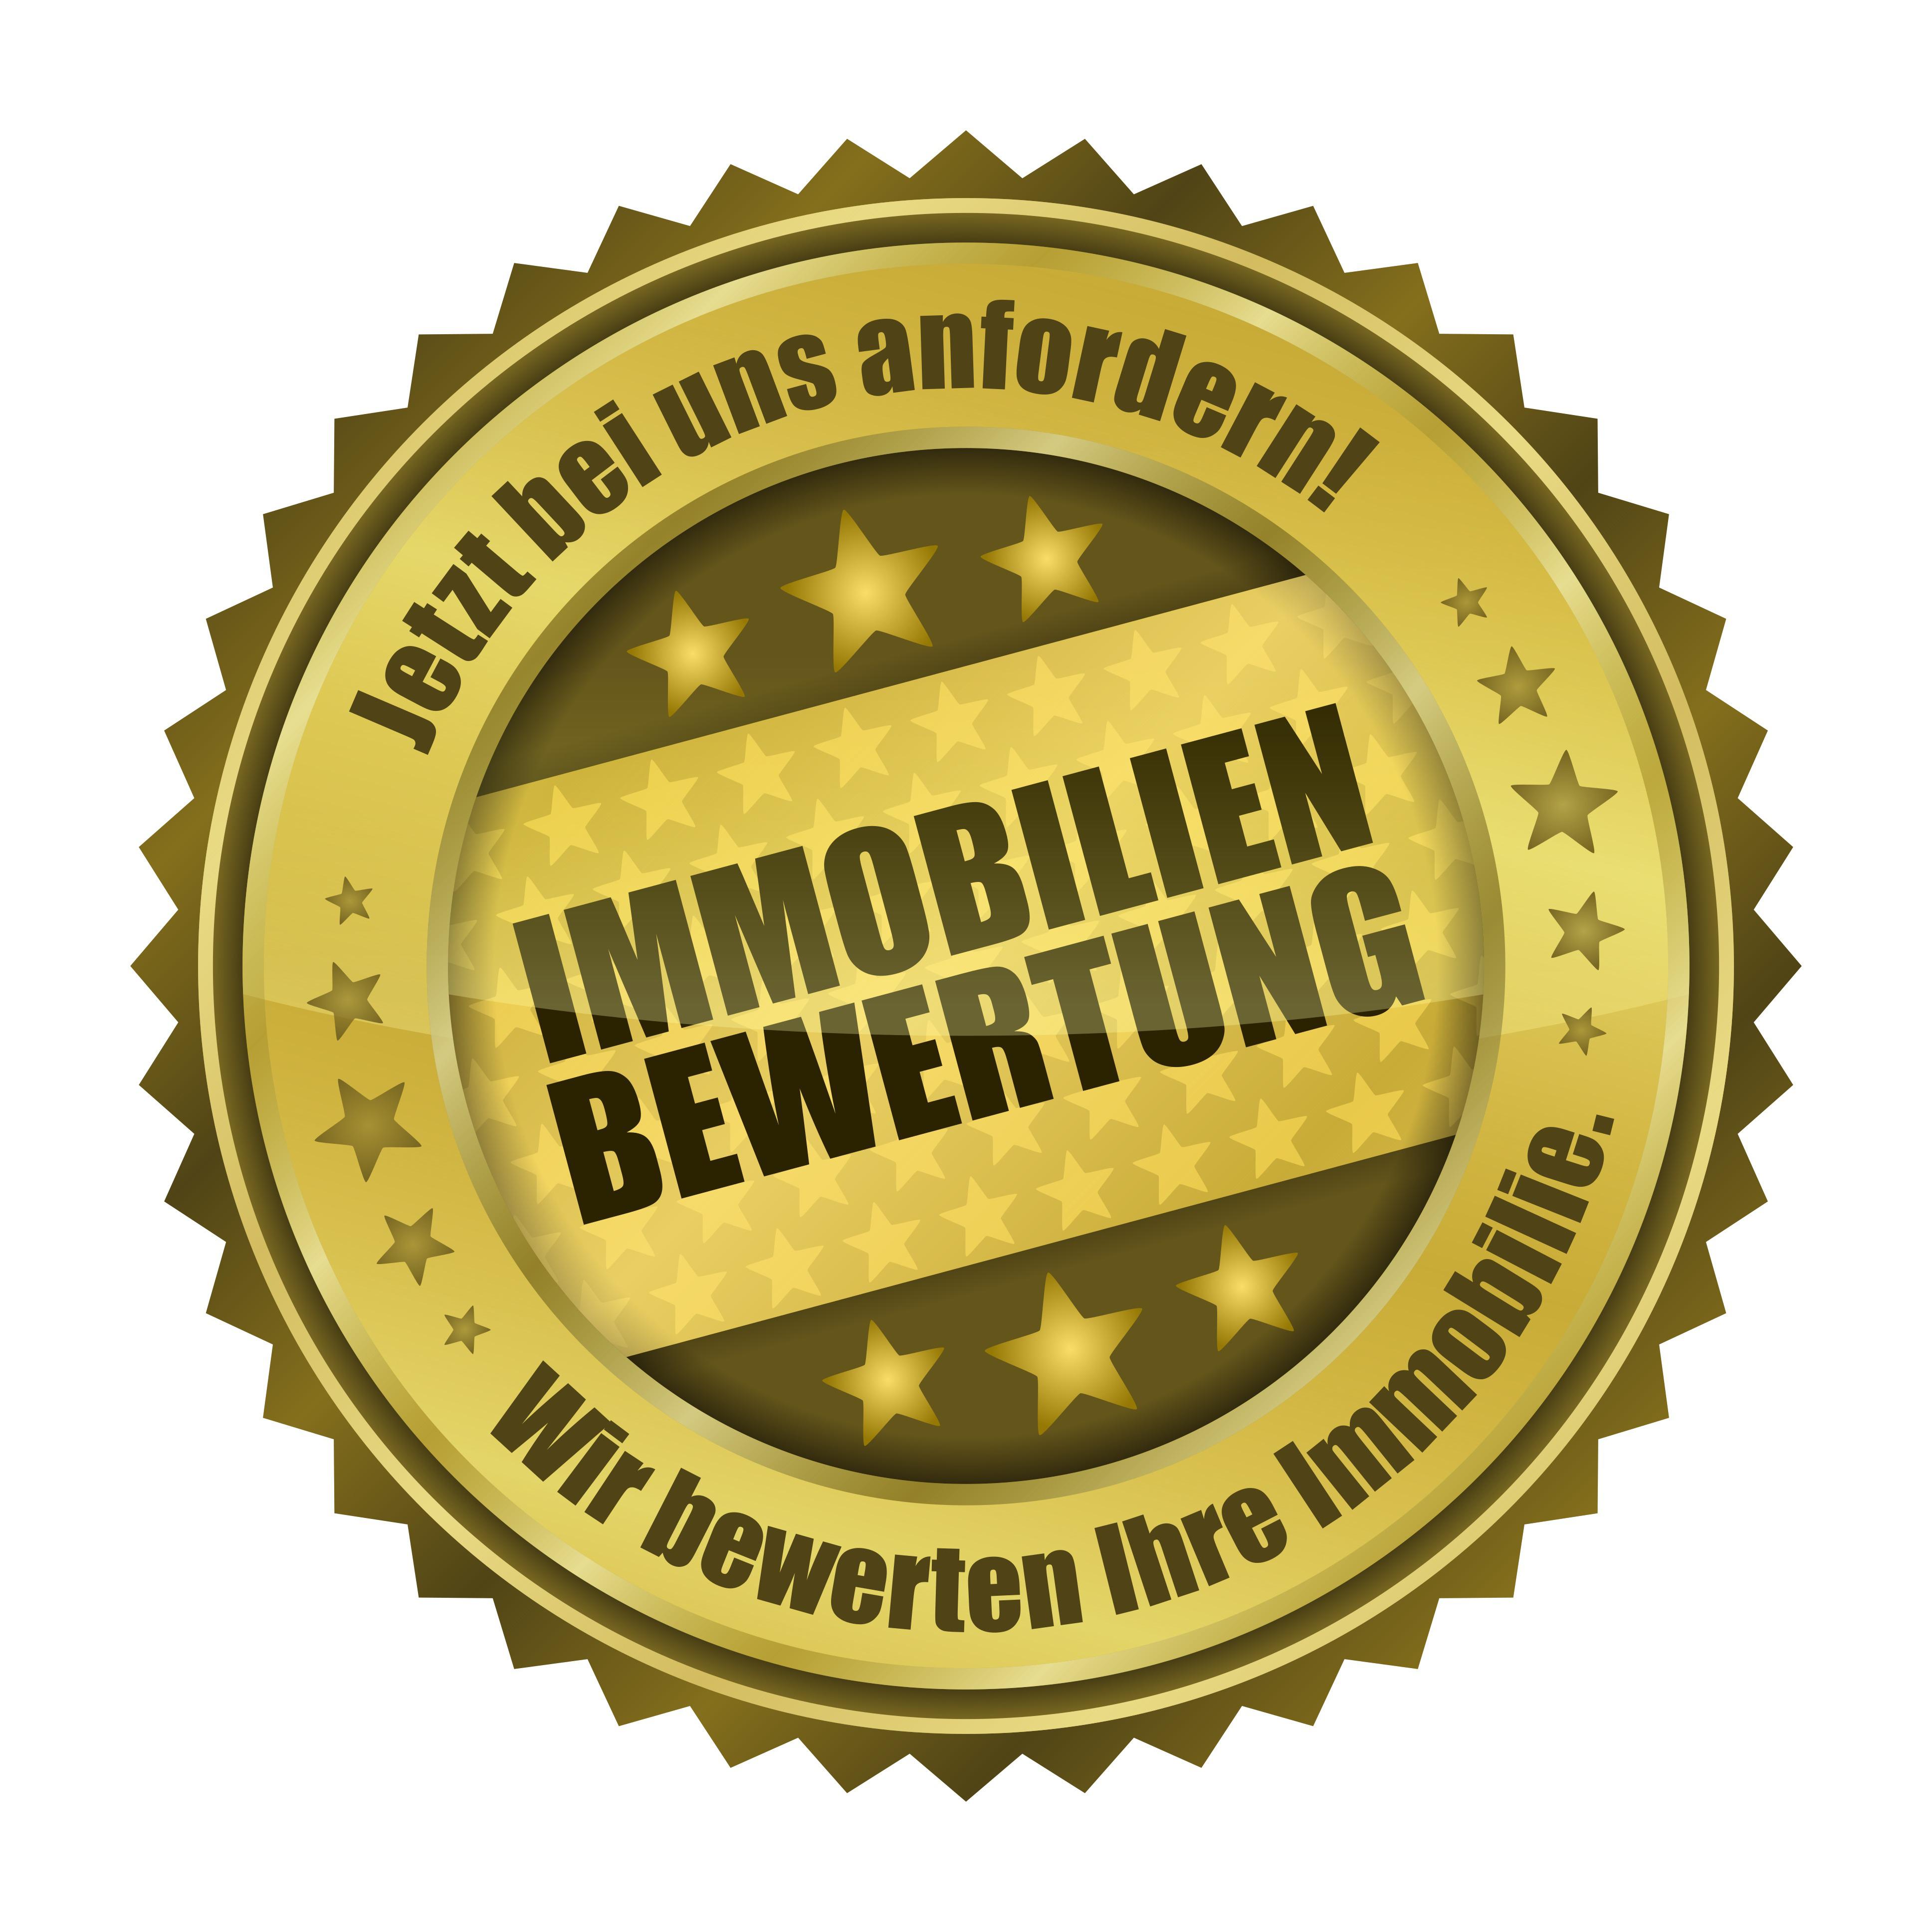 Immobilienbewertung Schulze & Partner in Hamburg - Logo